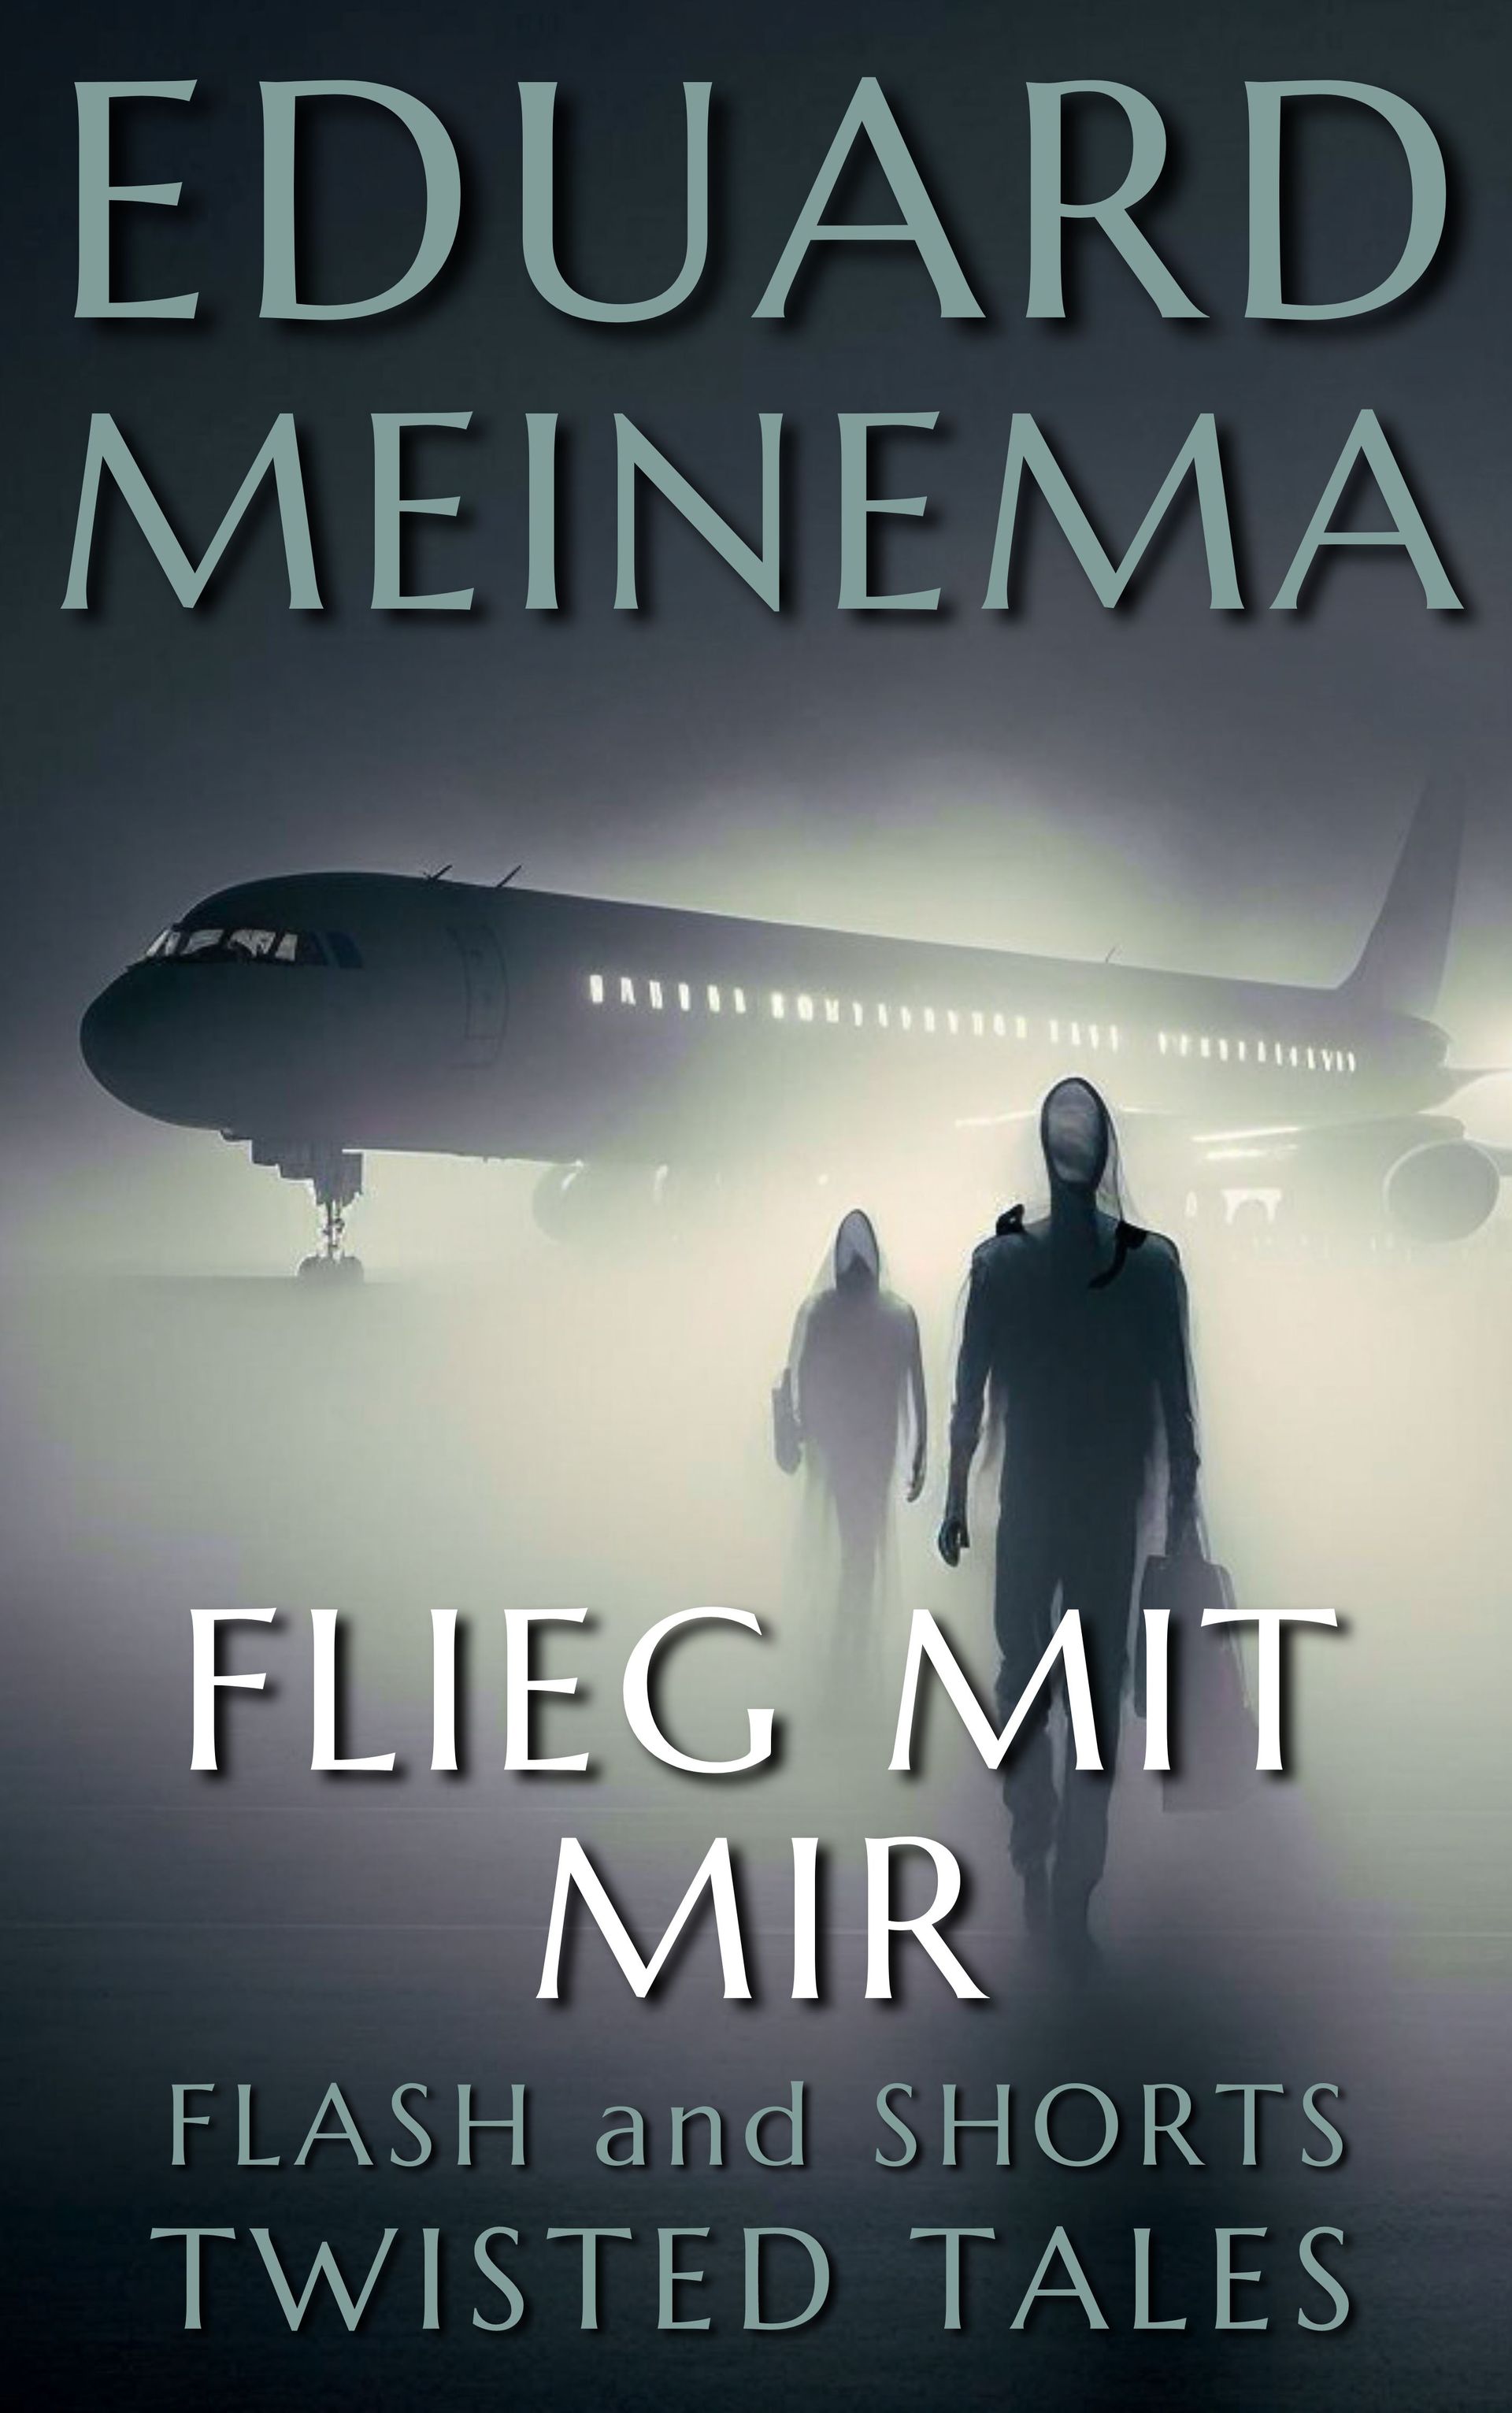 Flieg mit mir, Kurzgeschichte von Eduard Meinema.